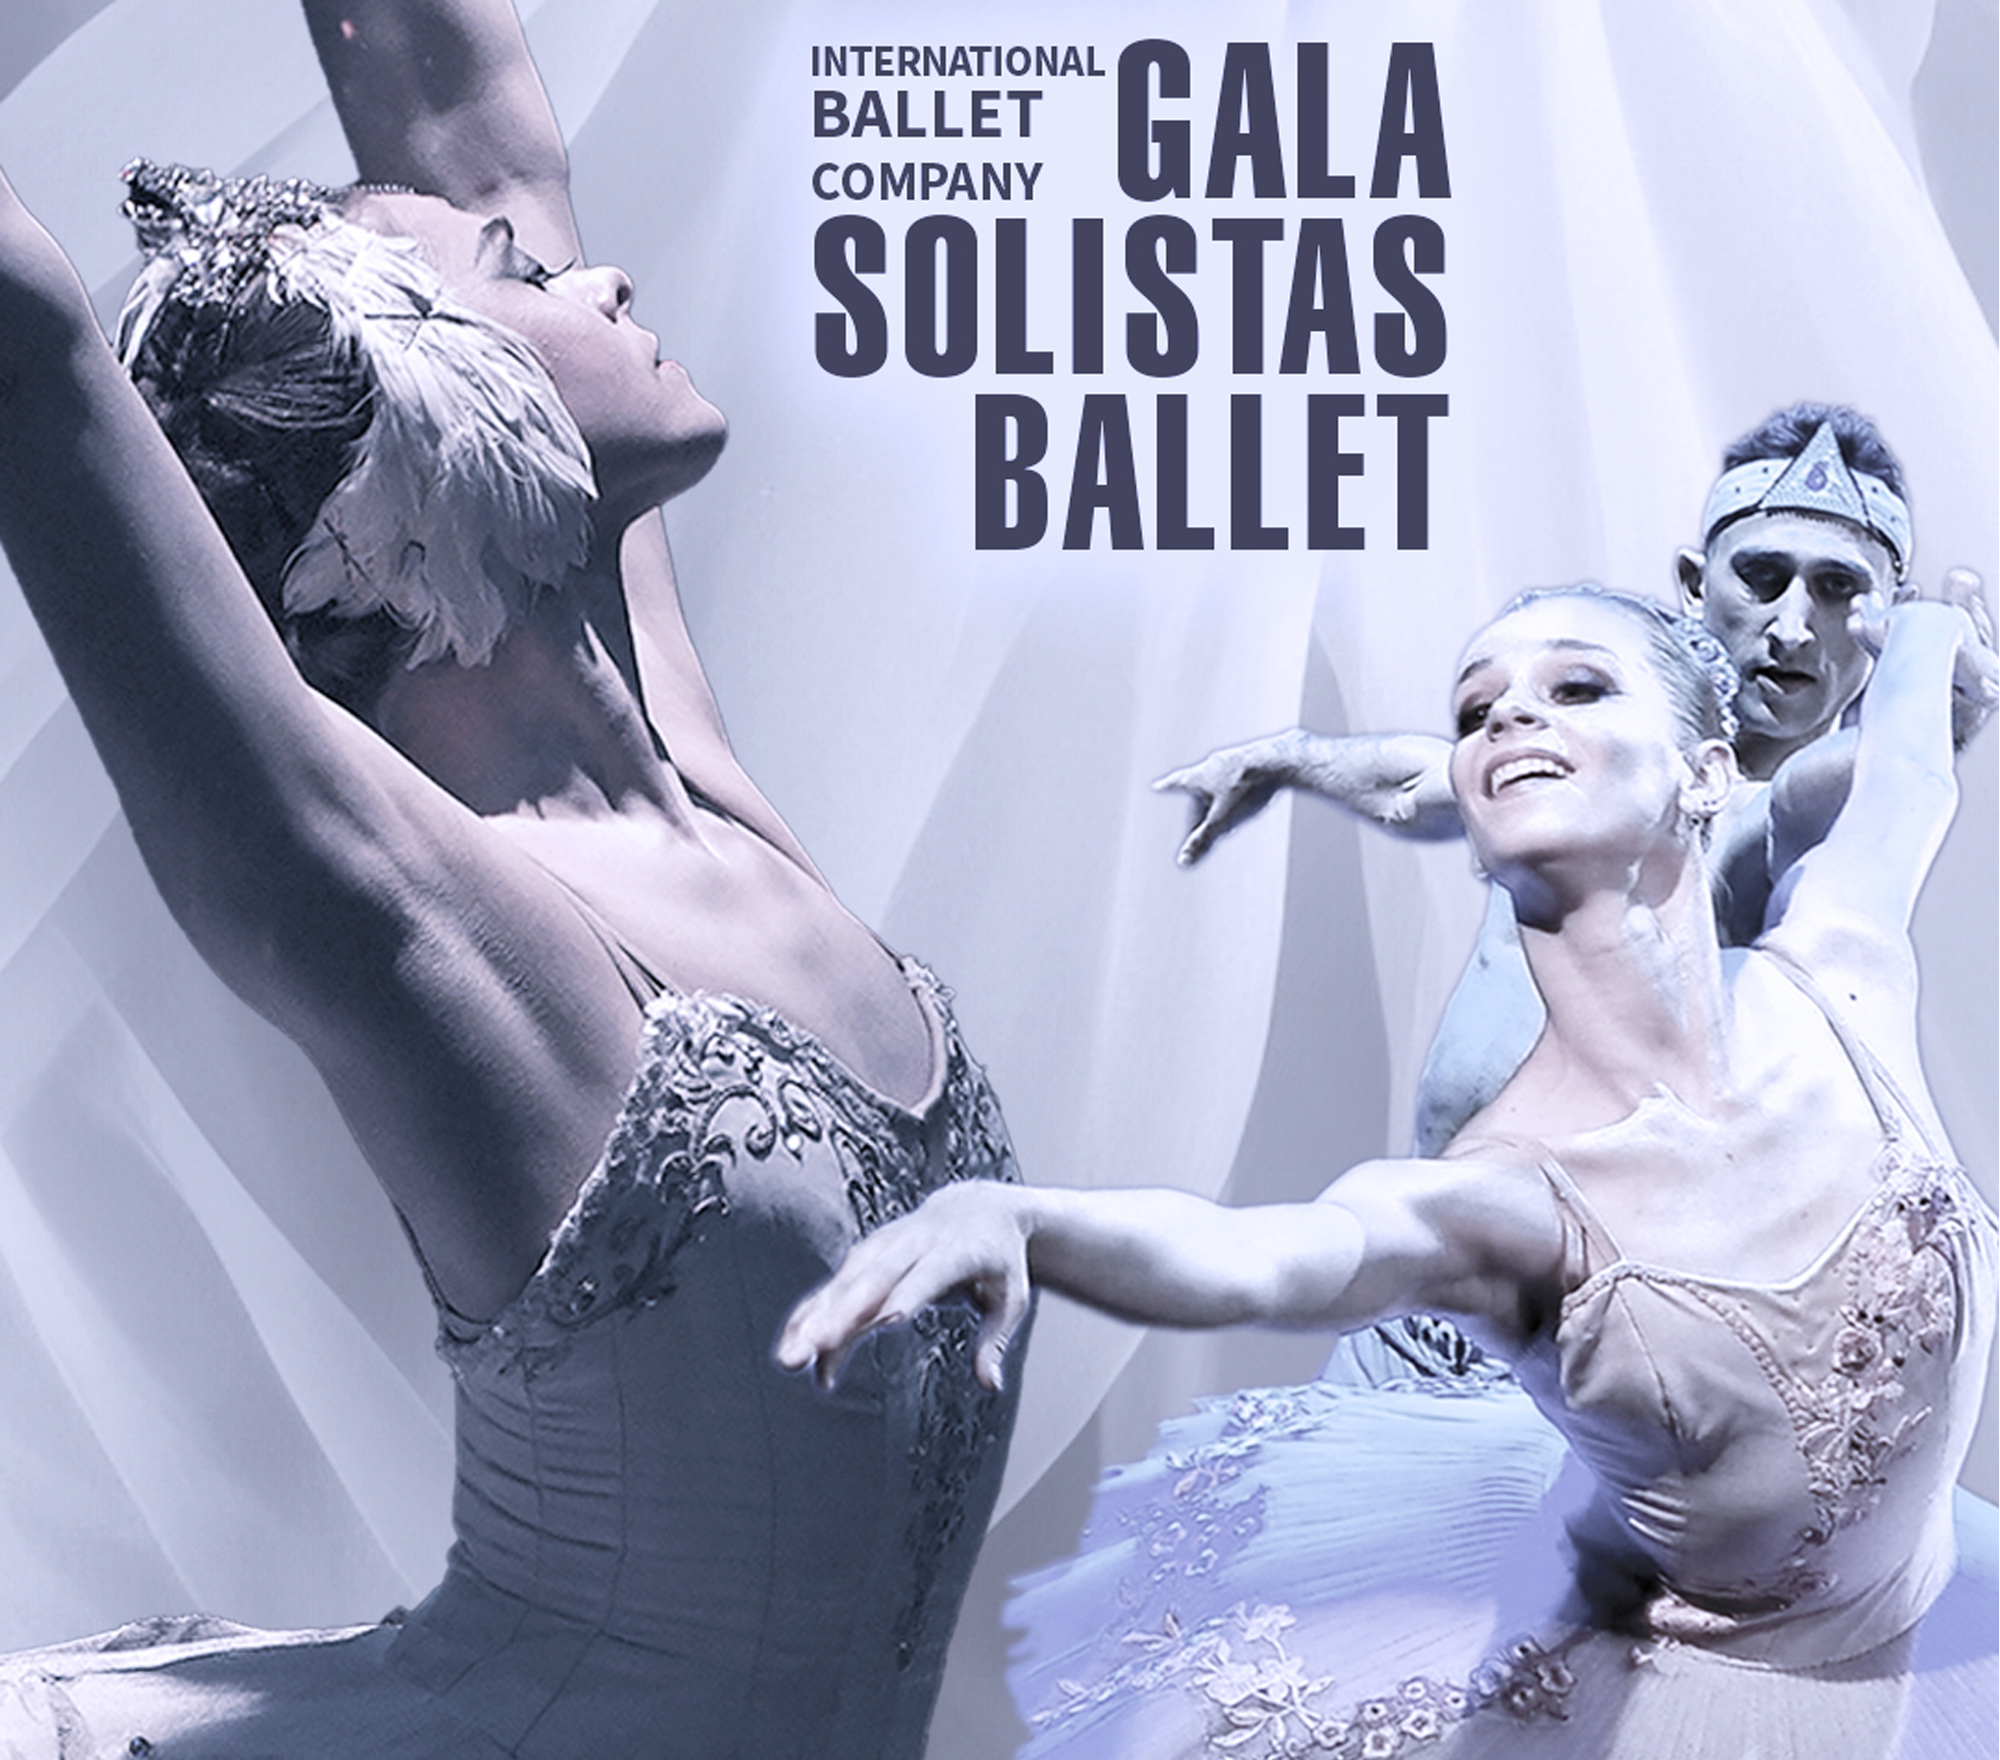 gala ballet soloists